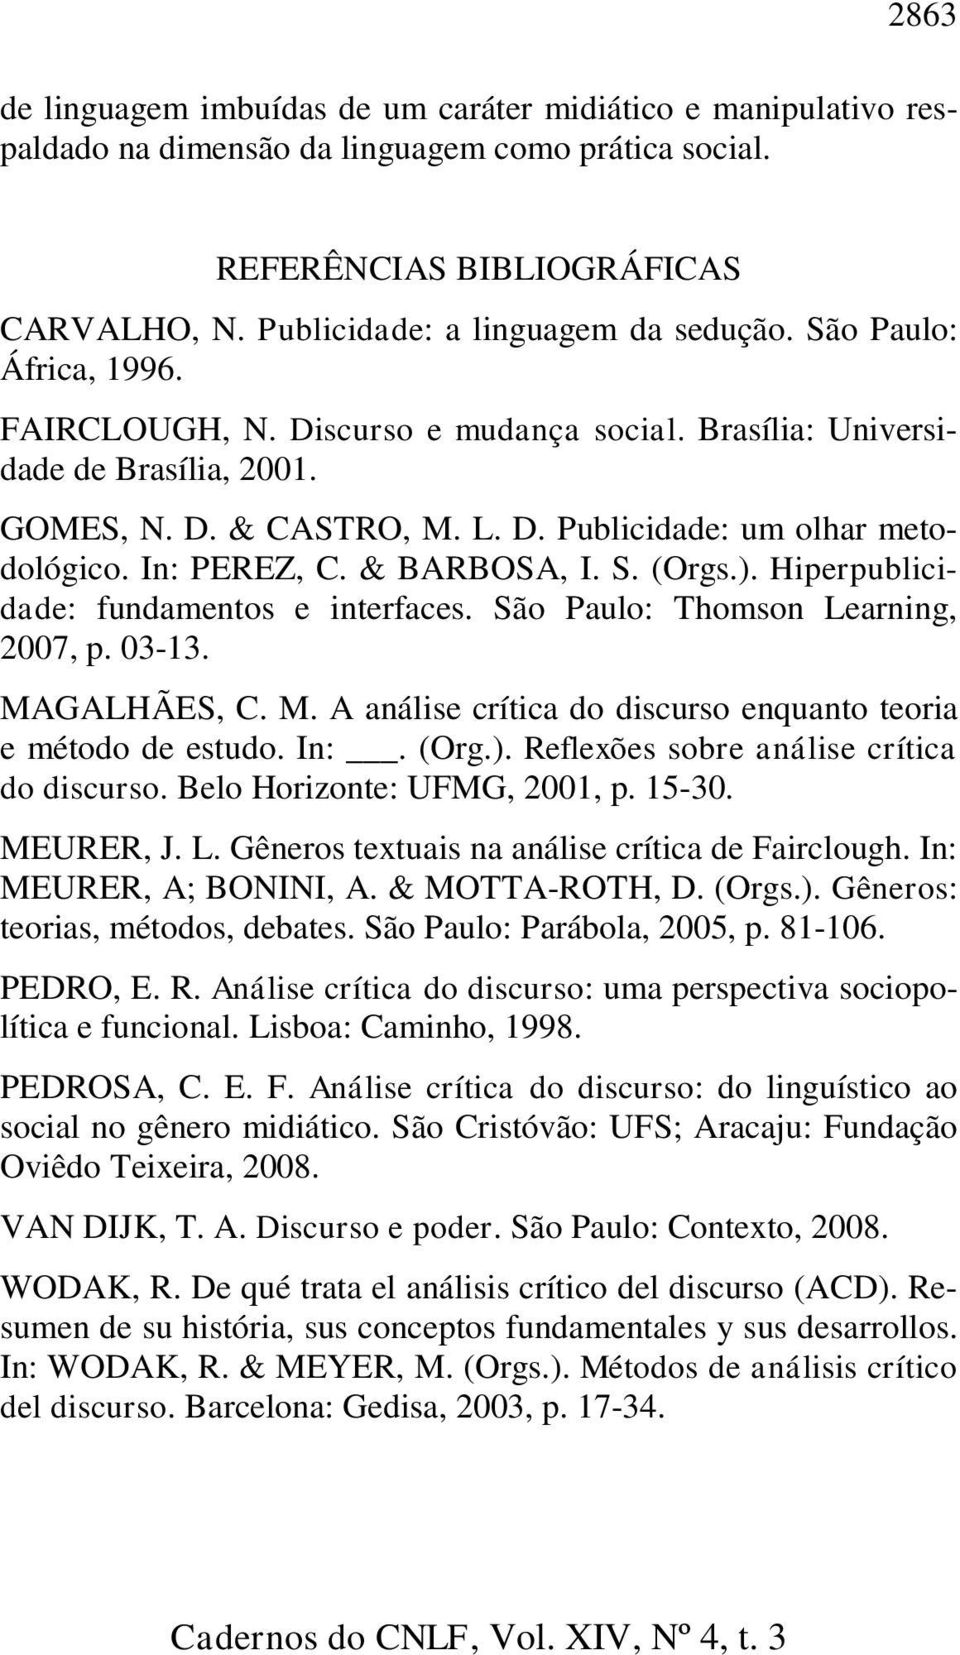 & BARBOSA, I. S. (Orgs.). Hiperpublicidade: fundamentos e interfaces. São Paulo: Thomson Learning, 2007, p. 03-13. MAGALHÃES, C. M. A análise crítica do discurso enquanto teoria e método de estudo.